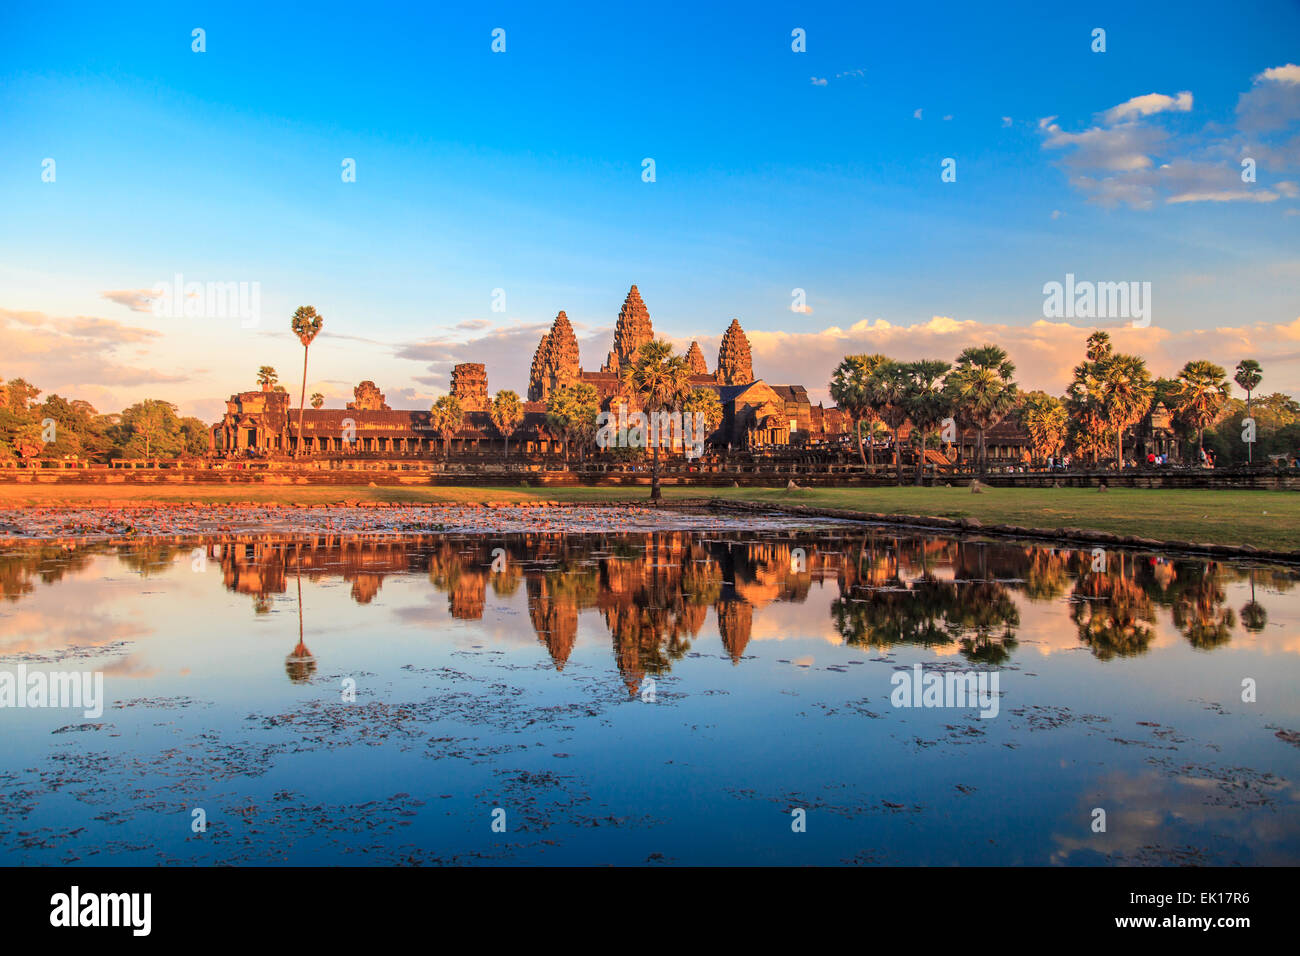 Angkor Wat Temple at sunset Stock Photo